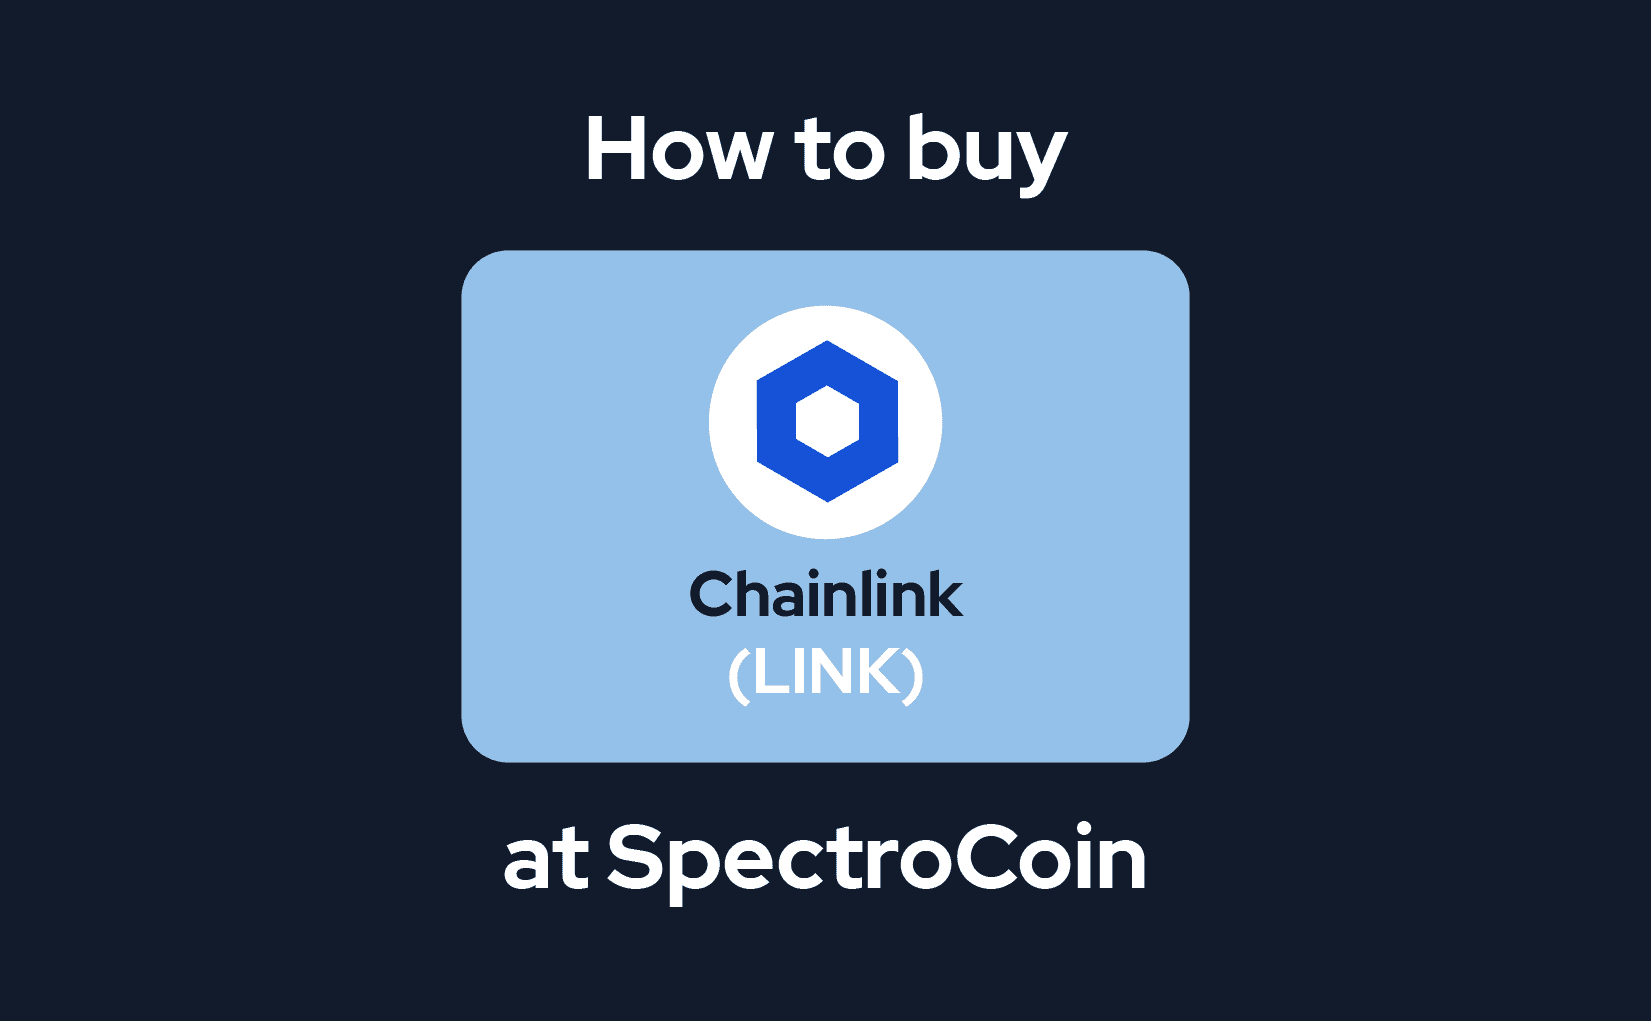 Juhend SpectroCoinis Chainlinki ostmiseks